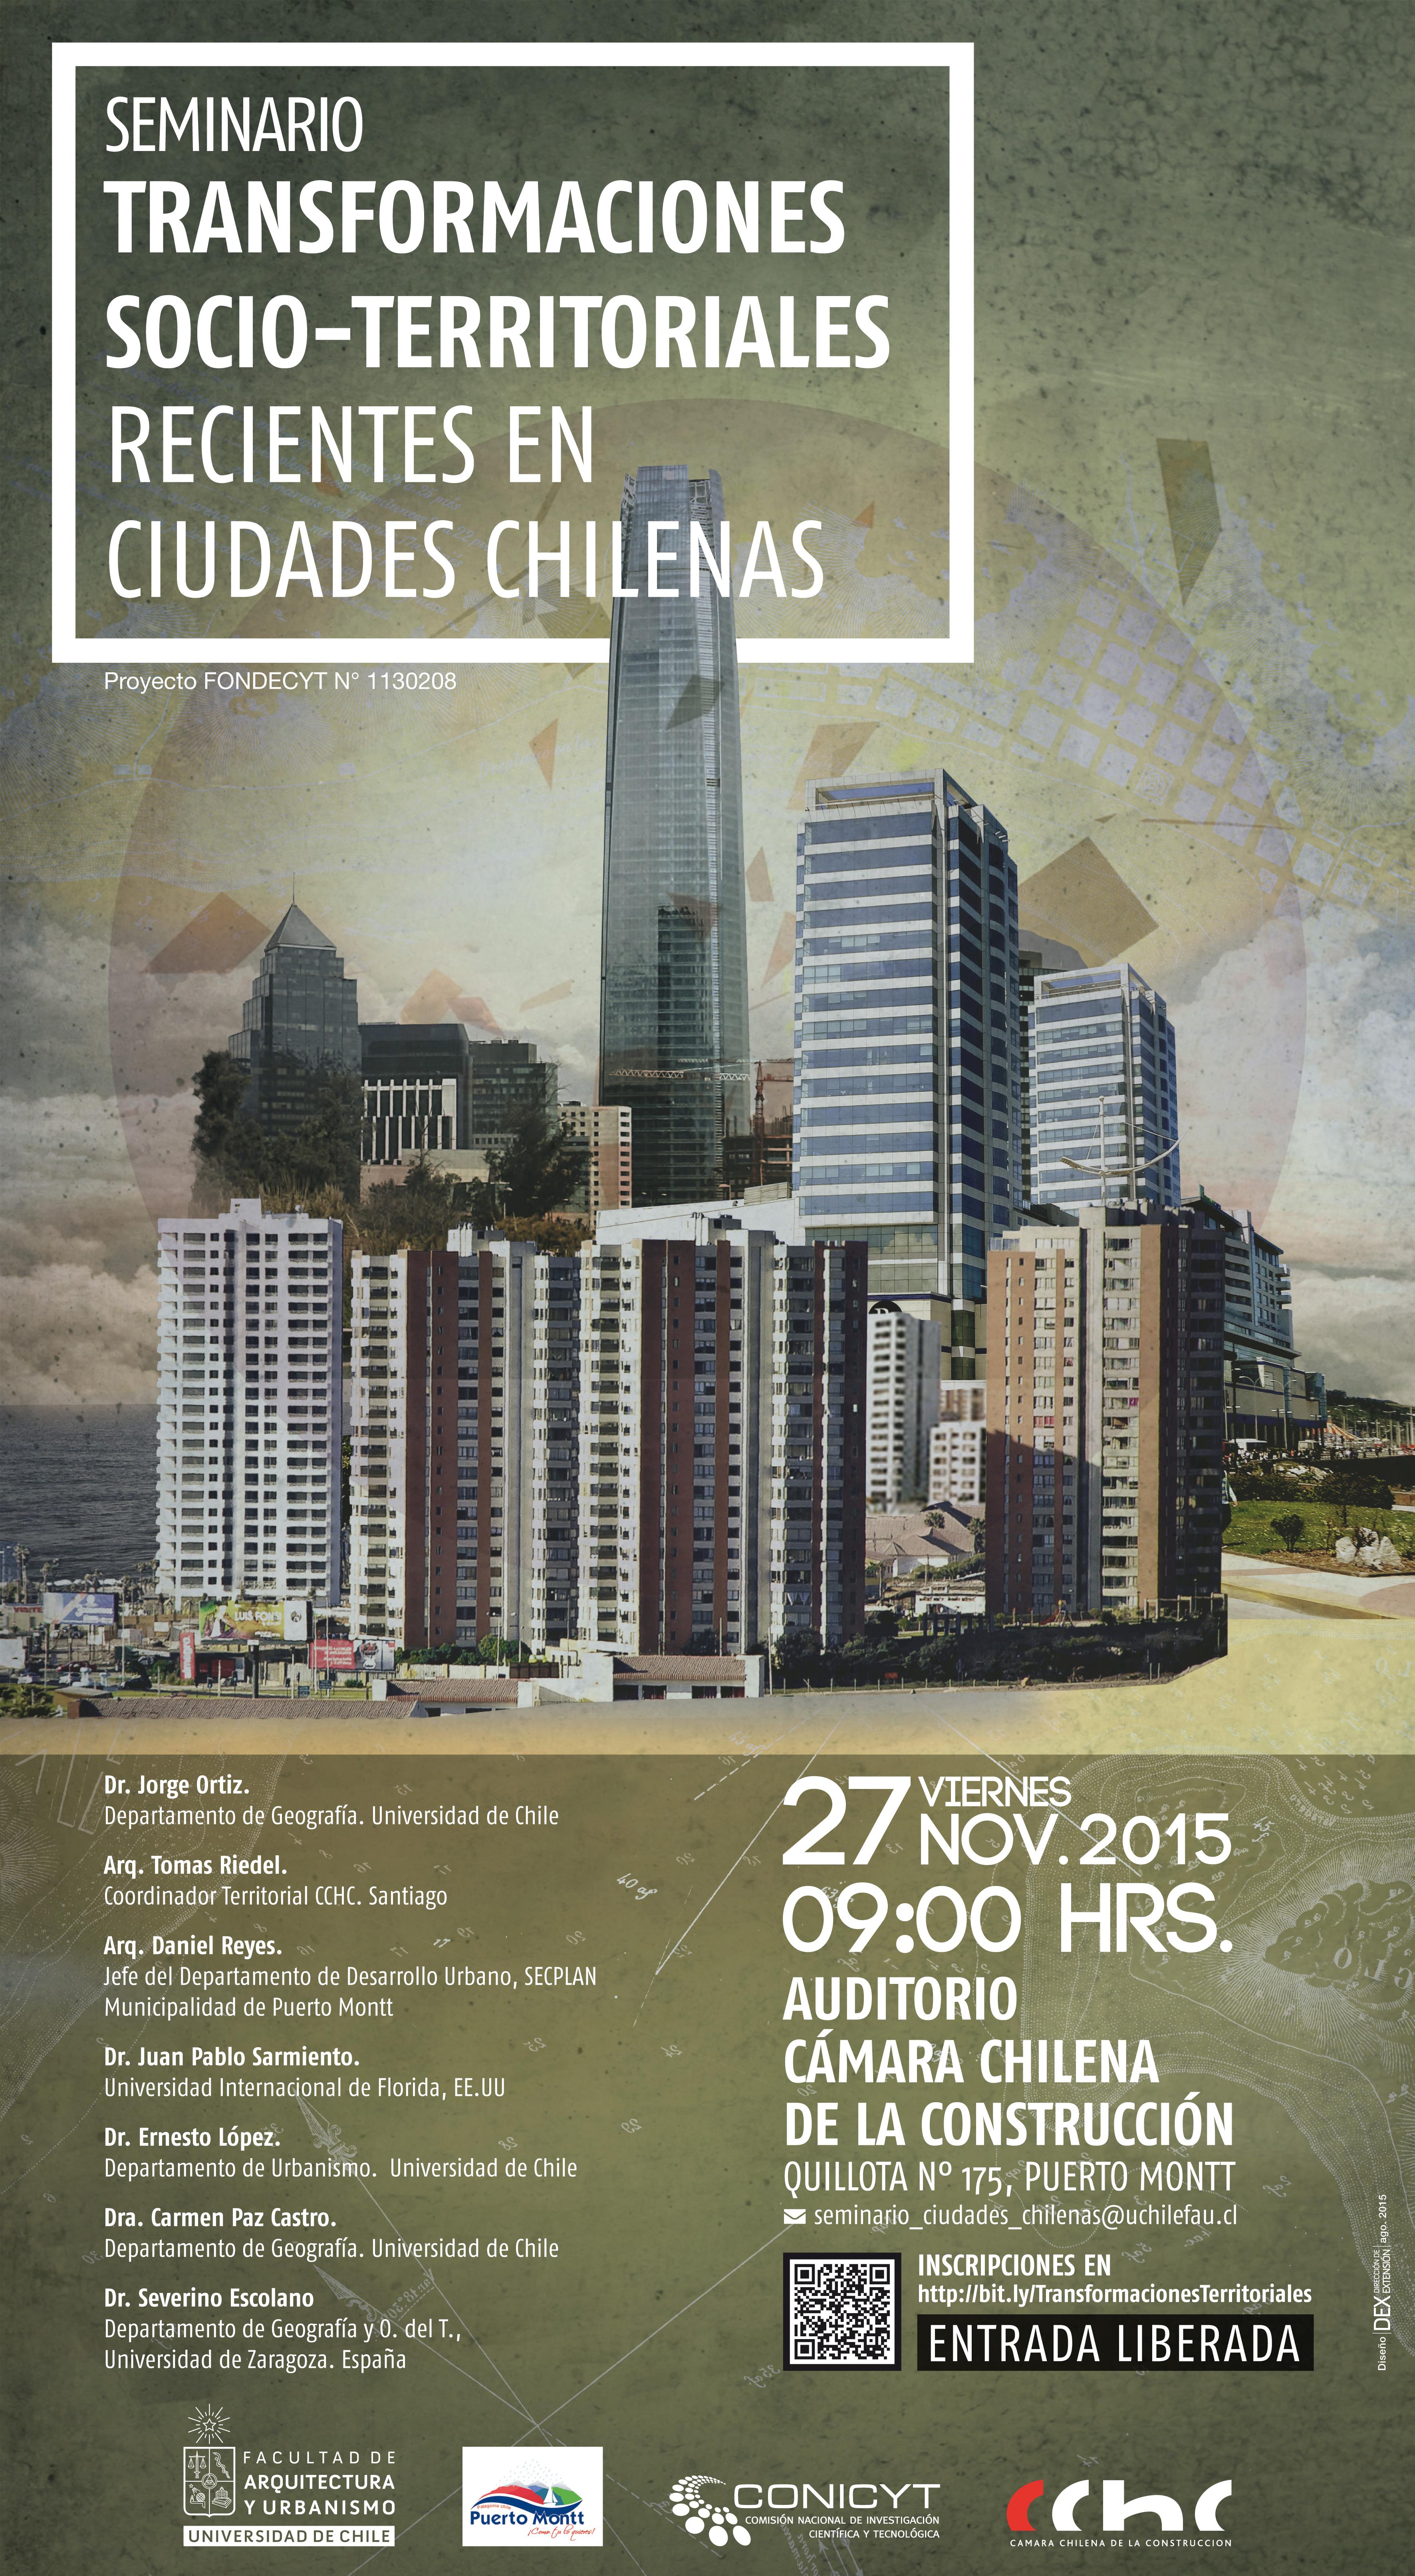 Afiche del seminario "Transformaciones socio-territoriales recientes en ciudades chilenas".